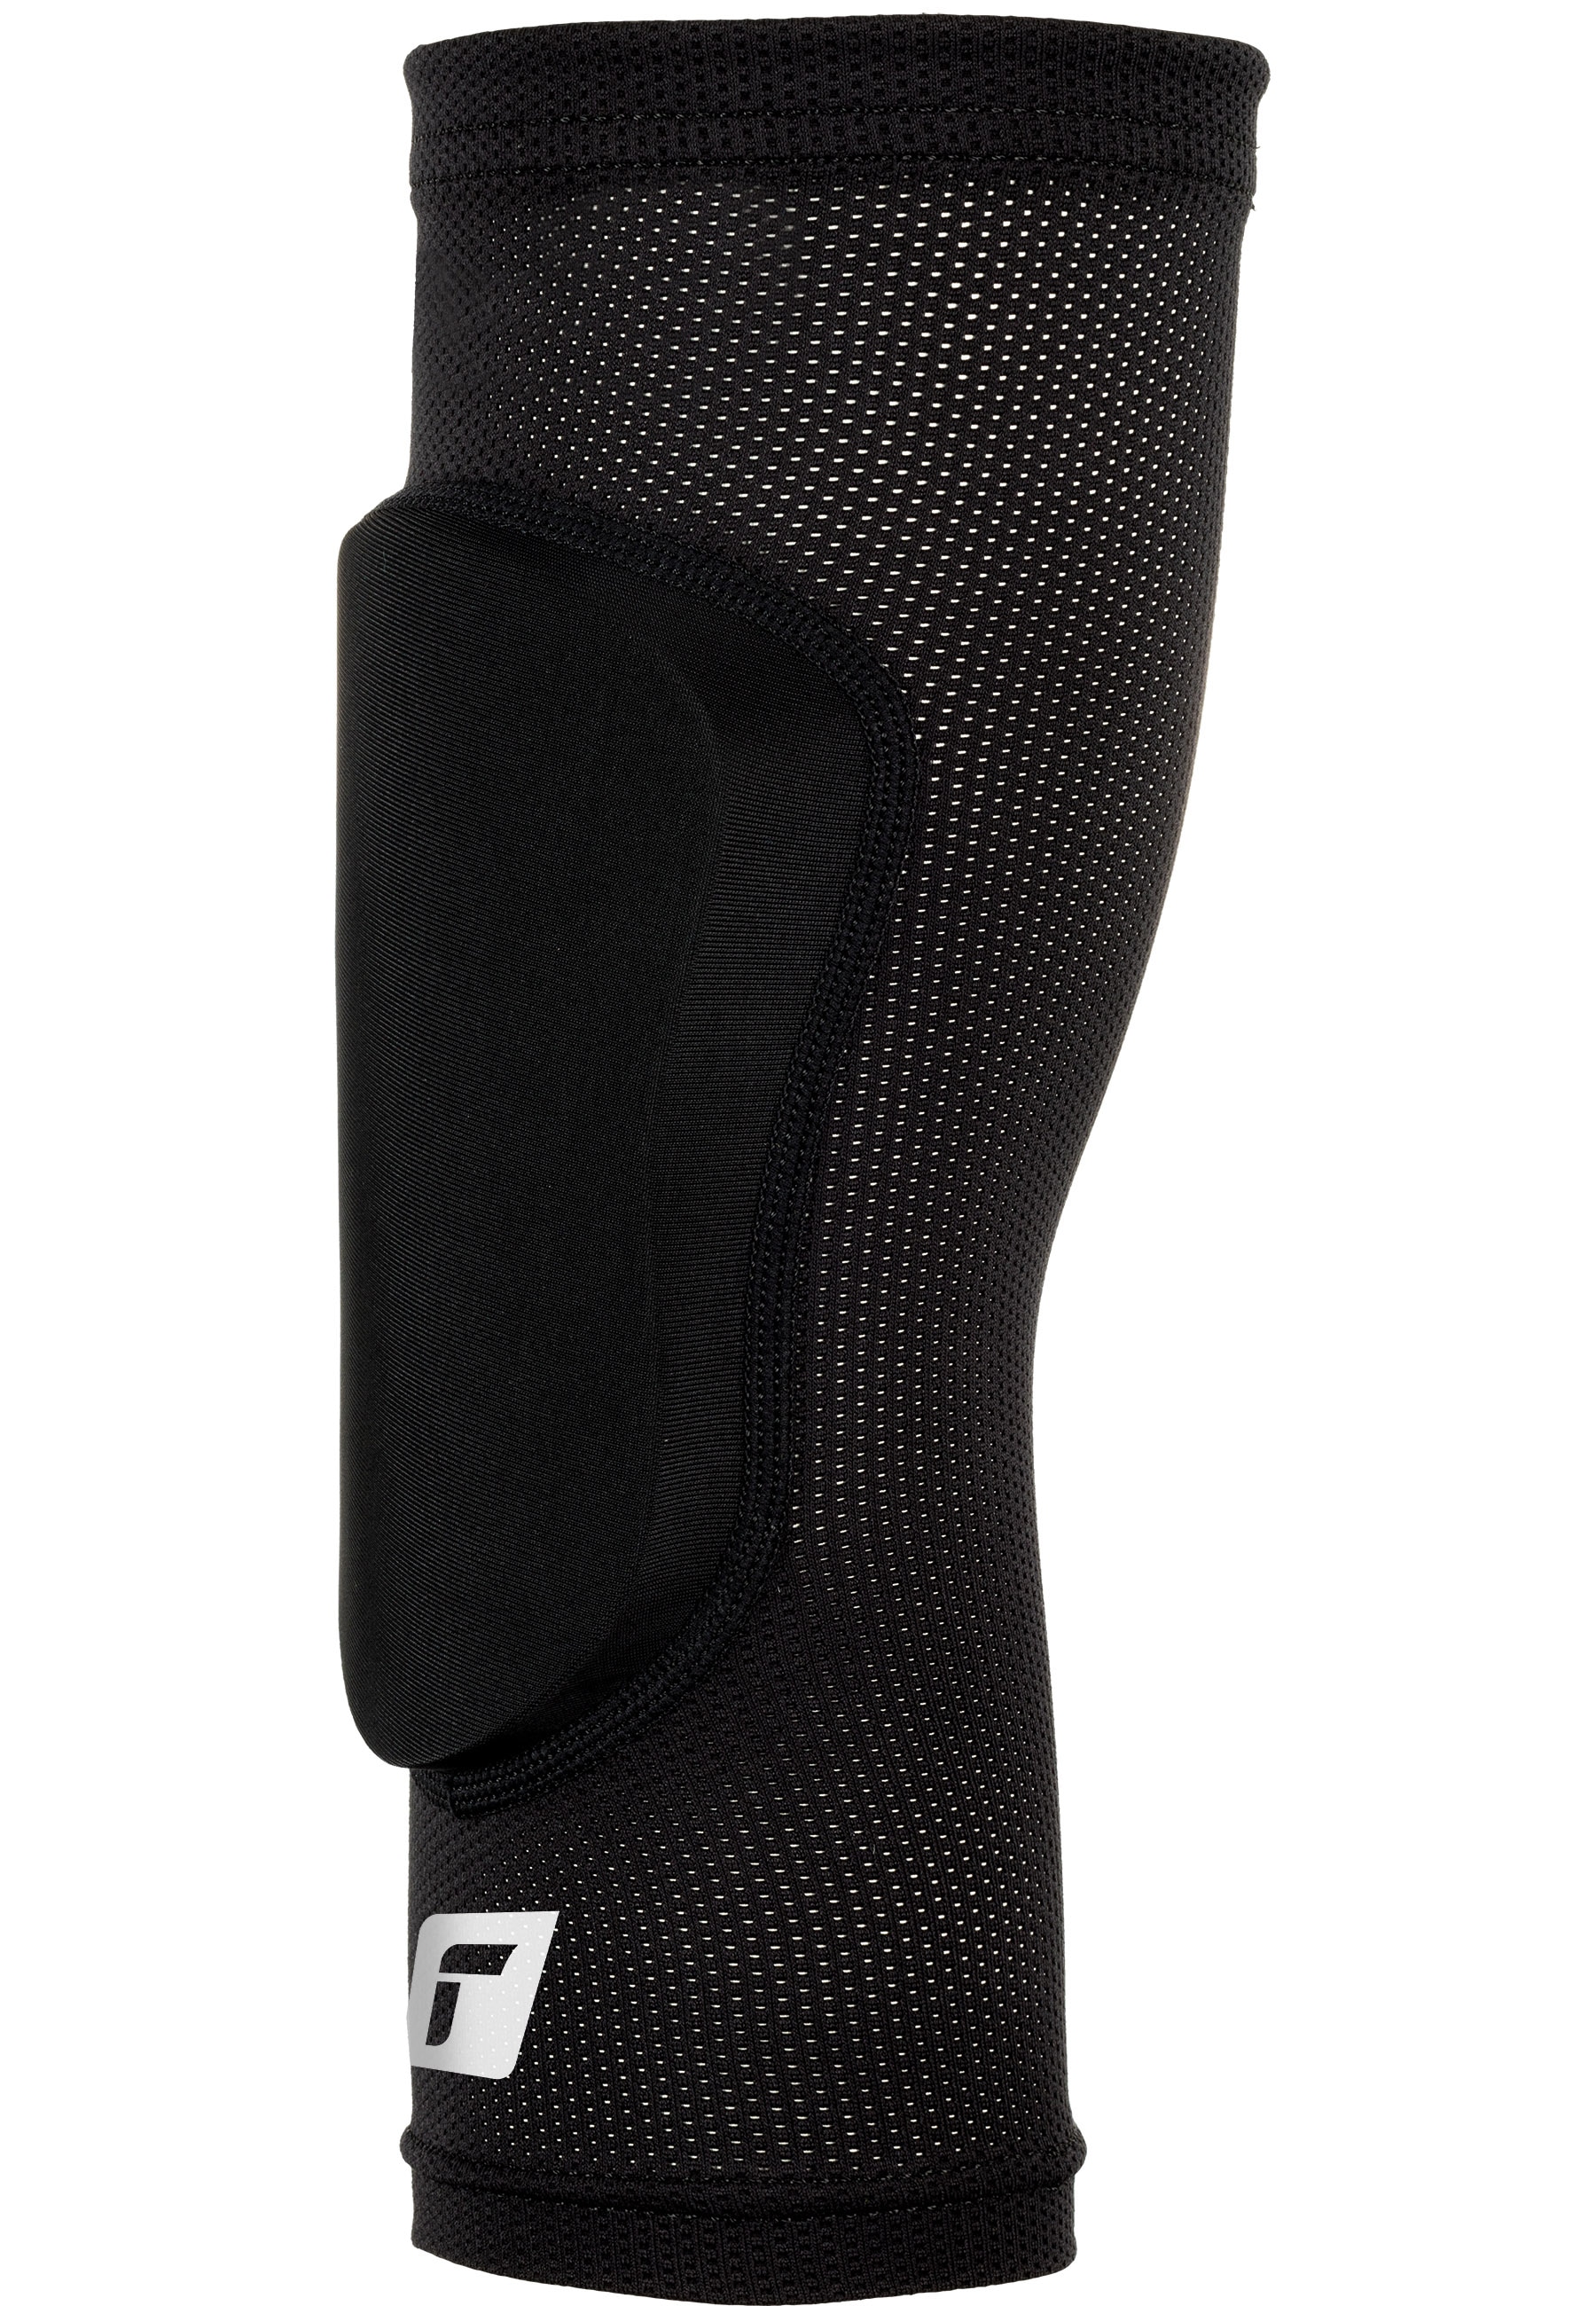 Reusch Knieprotektor »Elbow Protector Sleeve«, für optimale Bewegungsfreiheit